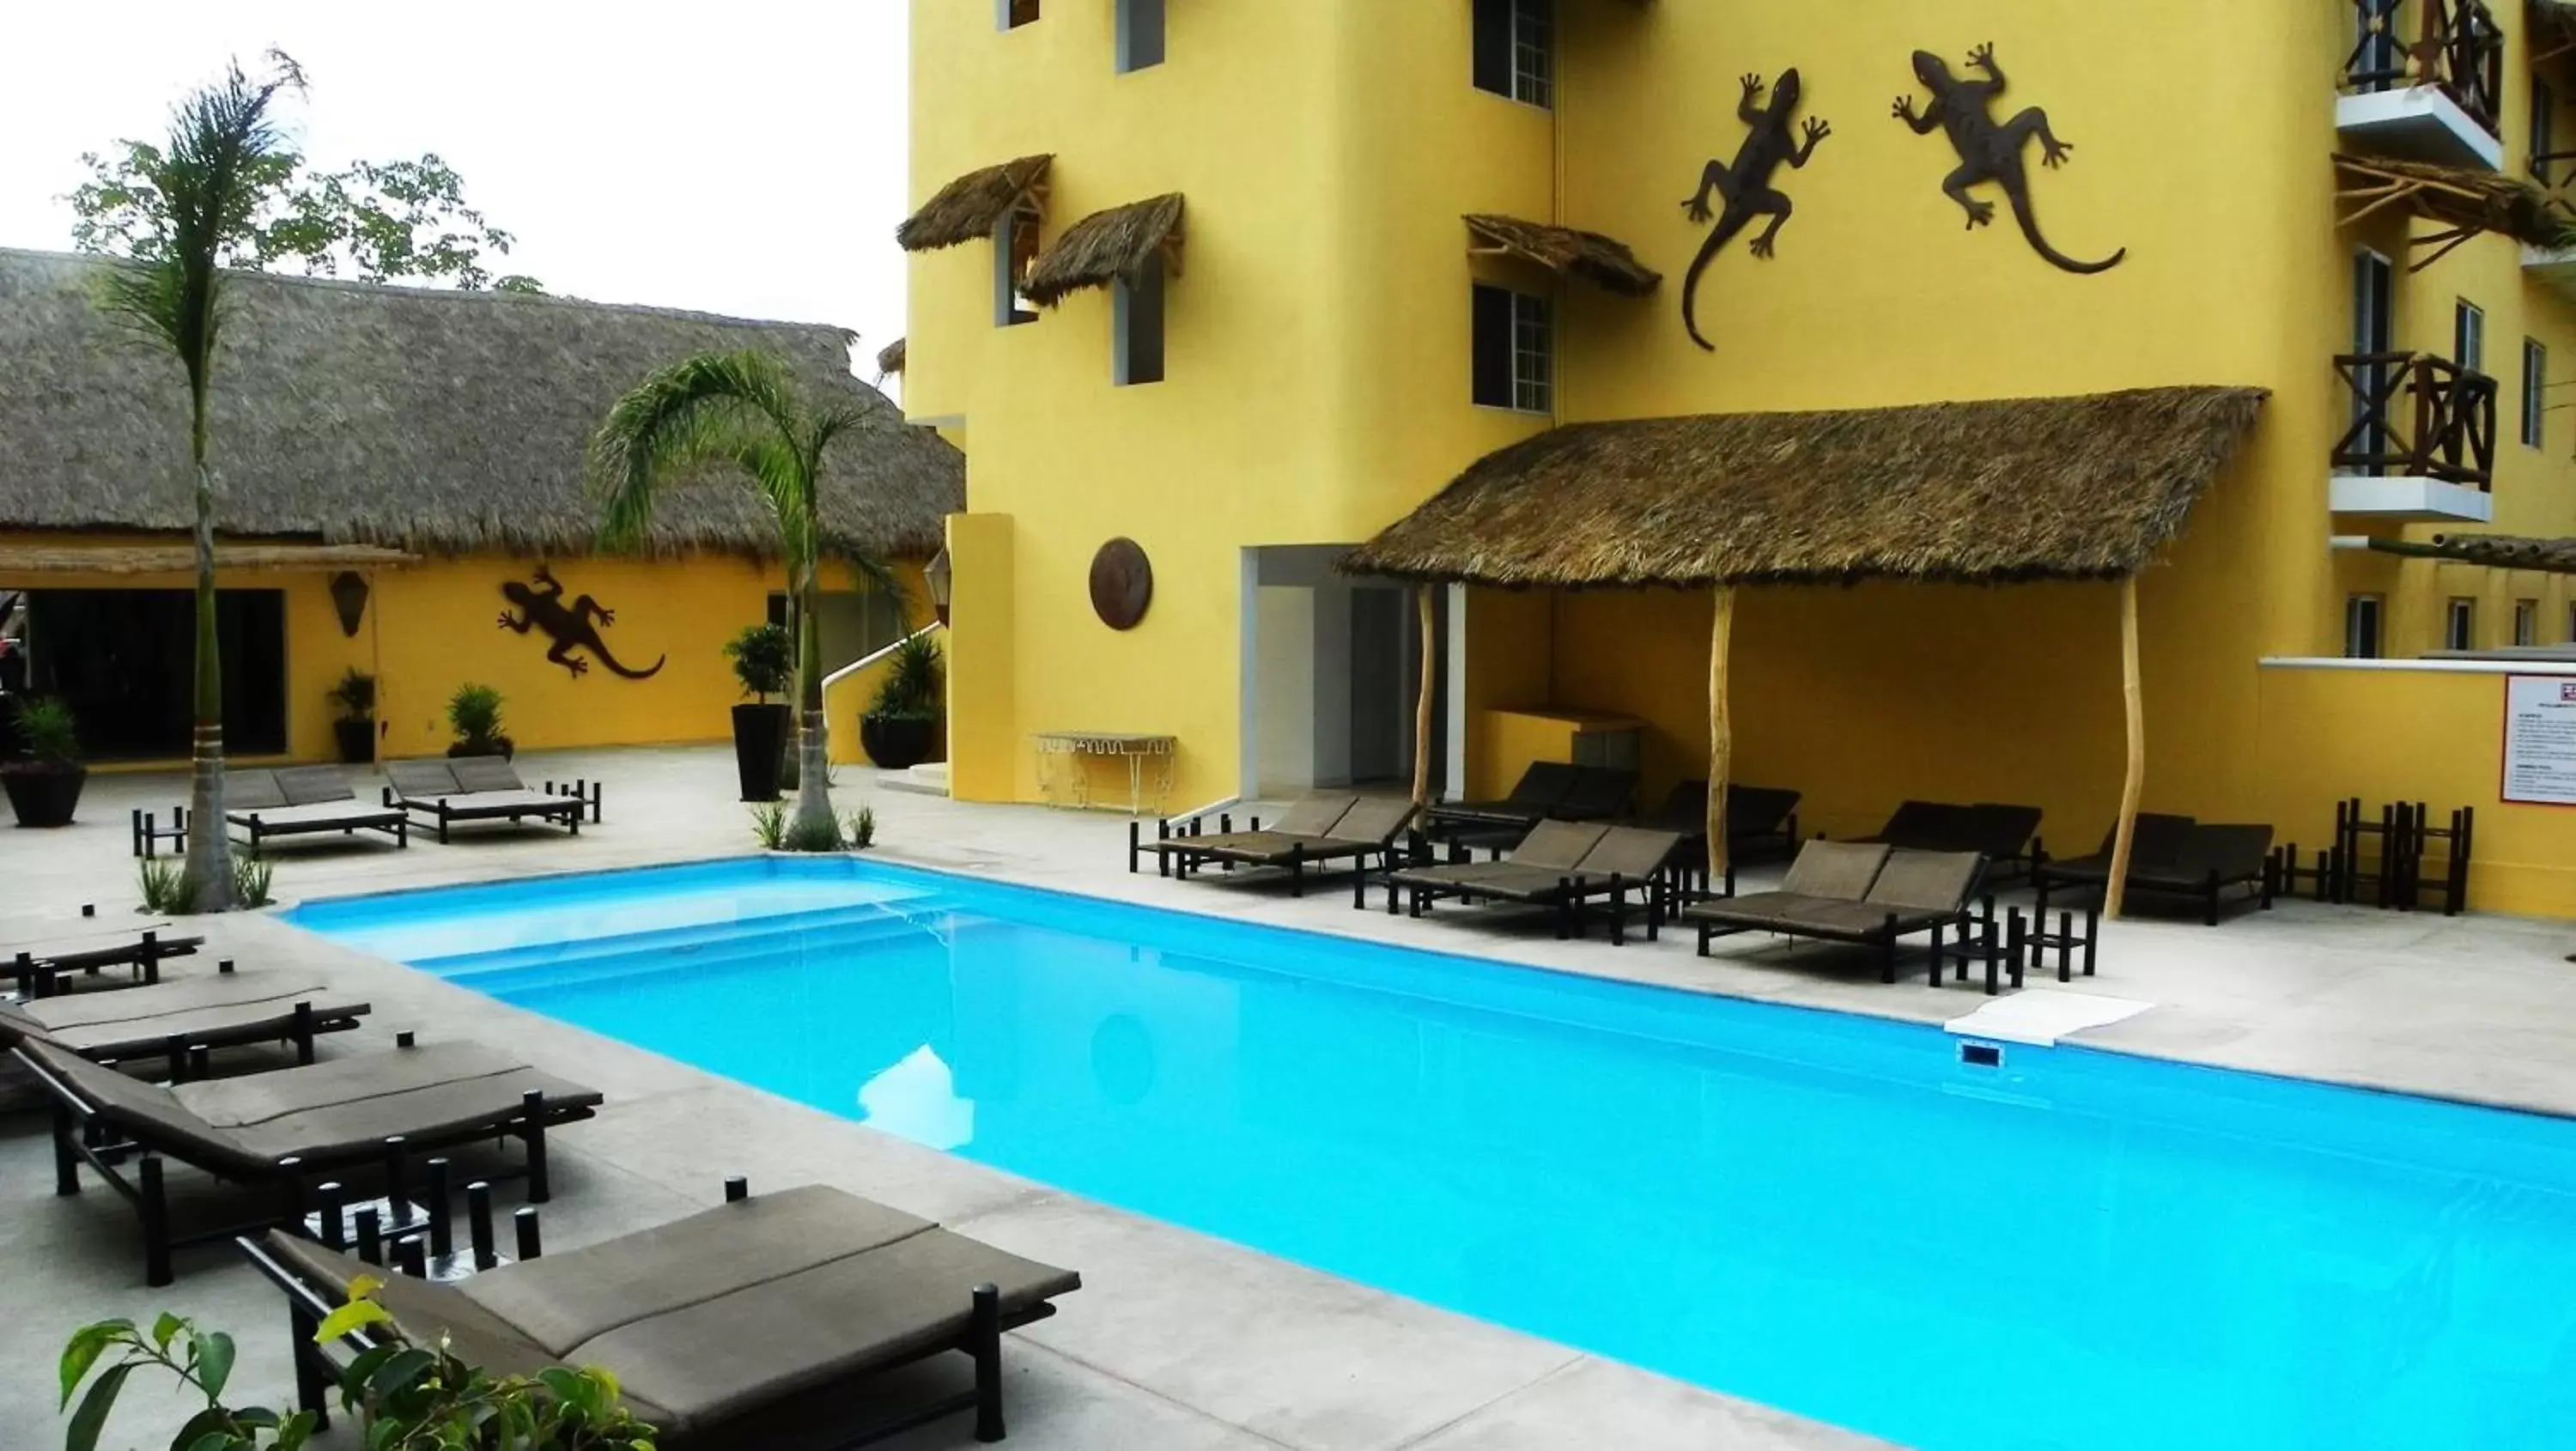 Day, Swimming Pool in Zar Manzanillo